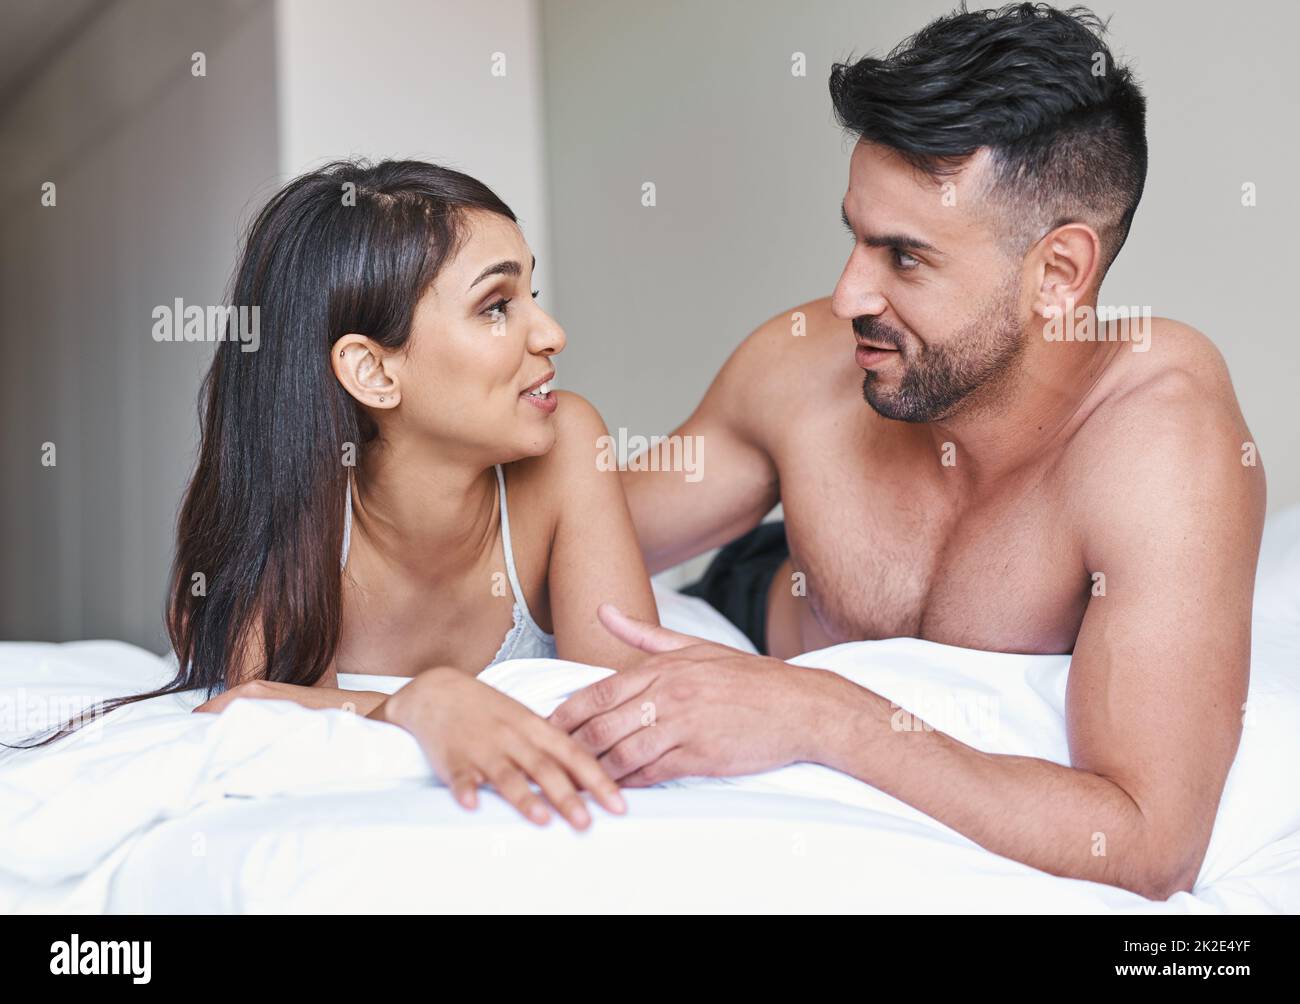 Hoy utilizamos la conversación para despertar. Foto recortada de una joven pareja casada cariñosa en la cama en casa. Foto de stock